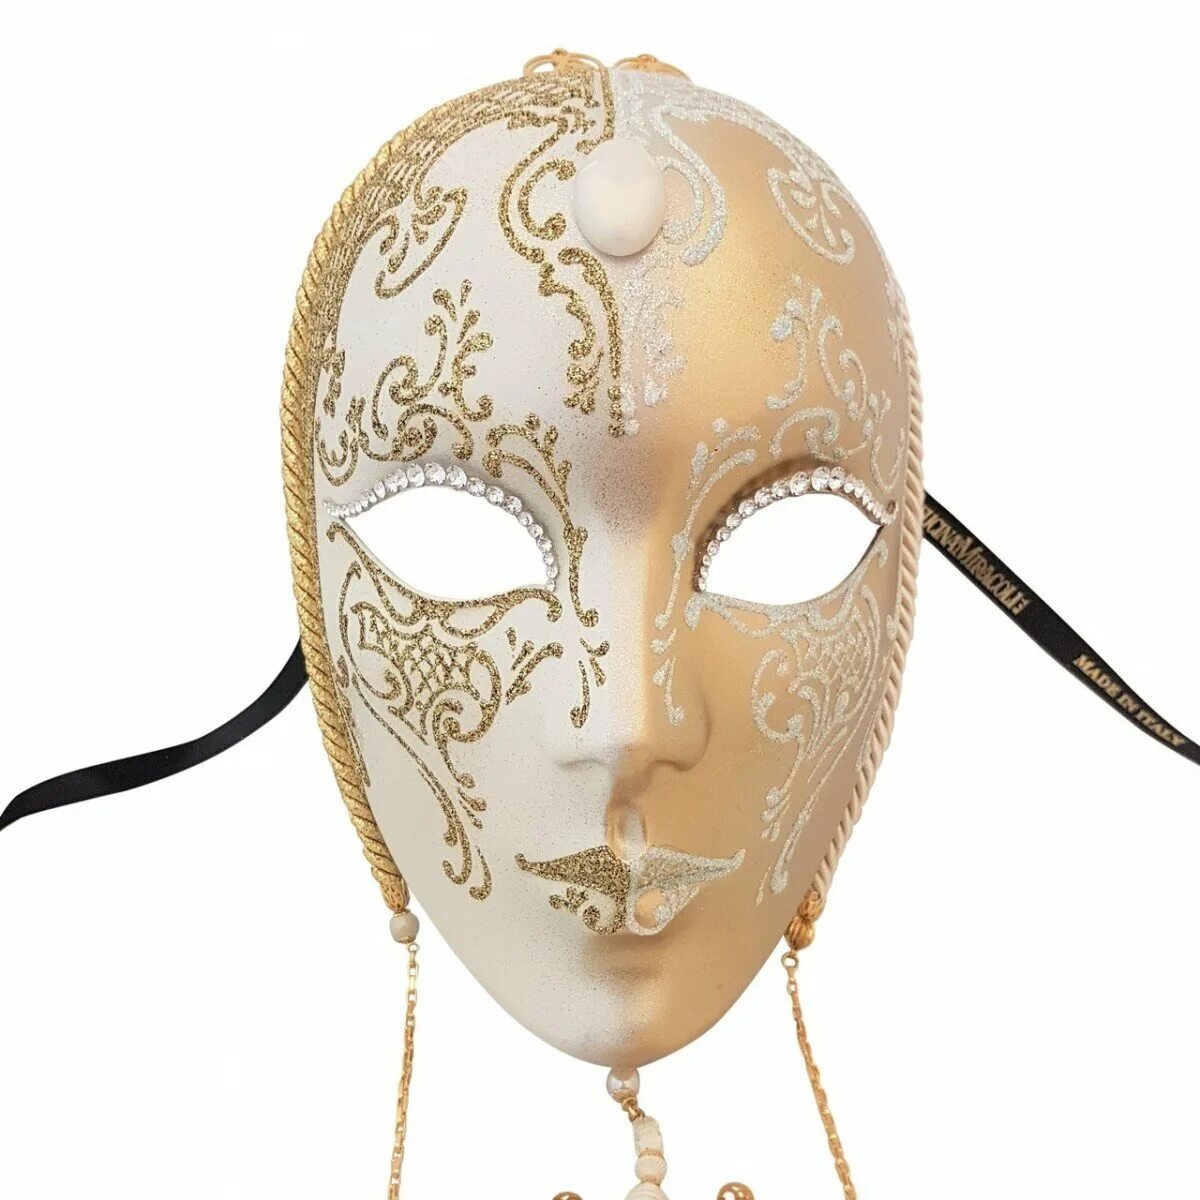 Венецианская маска Вольто. Венецианский карнавал Вольто. Маска Вольто Венеция. Венецианская маска Вольтер. Как появились маски